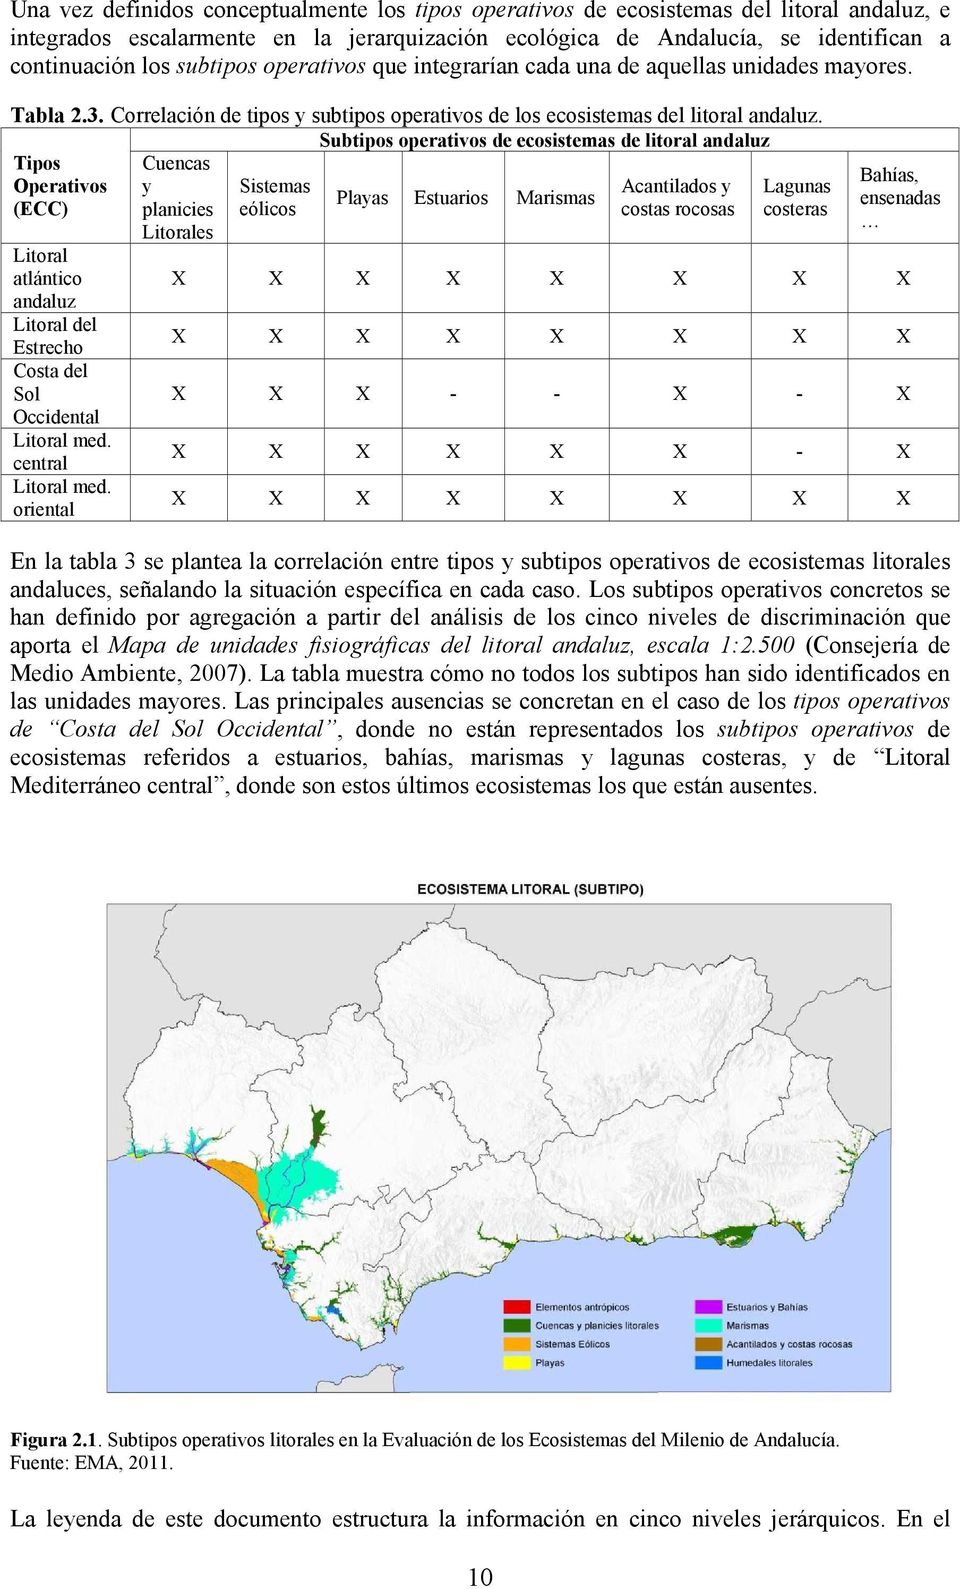 Subtipos operativos de ecosistemas de litoral andaluz Tipos Operativos Sistemas Acantilados y Lagunas Playas Estuarios Marismas (ECC) eólicos costas rocosas costeras Litoral atlántico andaluz Litoral